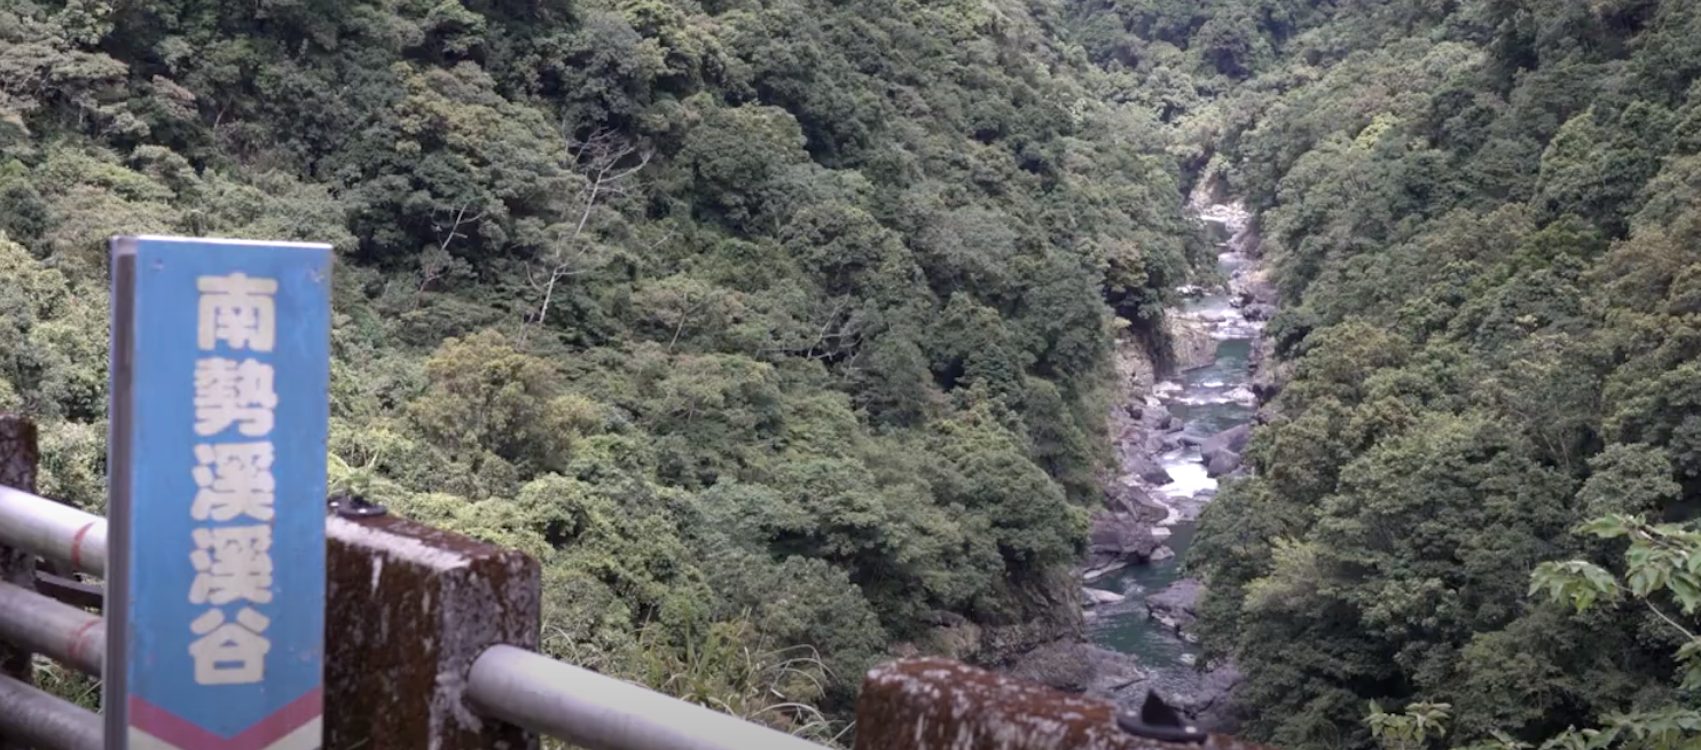 Taiwan withdraws Nanshi Creek development after public outcry